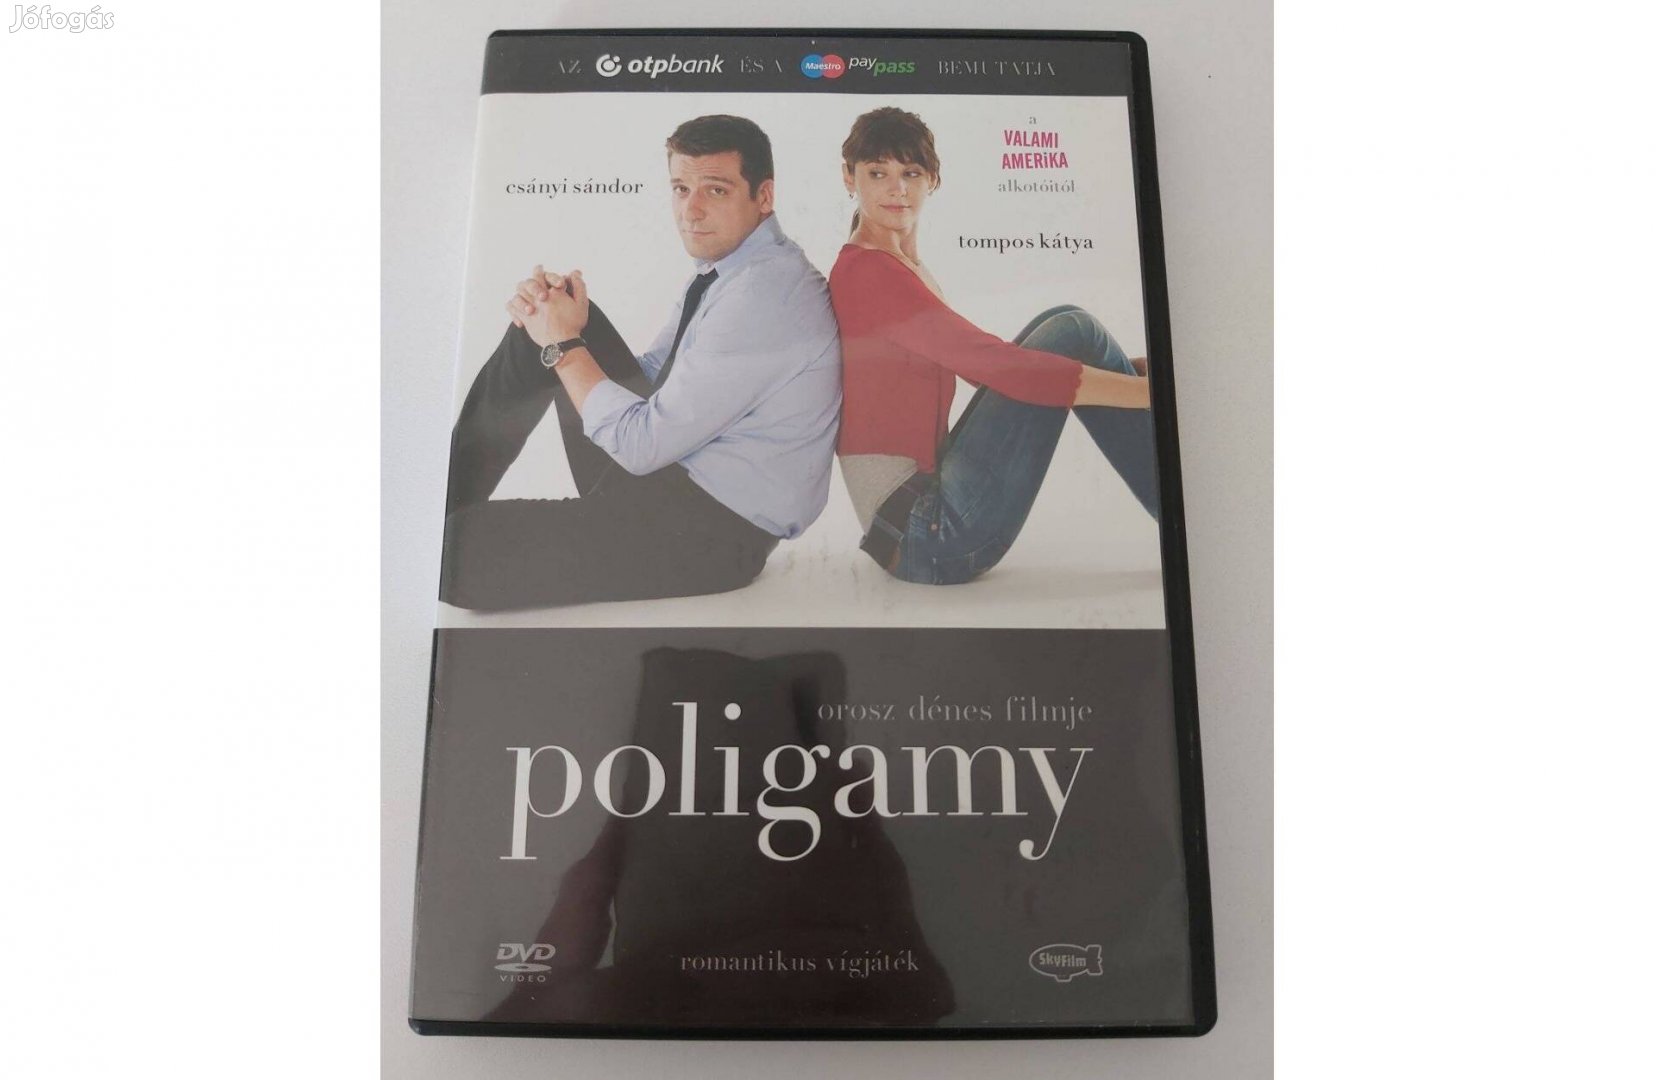 Orosz Dénes: Poligamy (DVD) - Csányi Sándor, Tompos Kátya